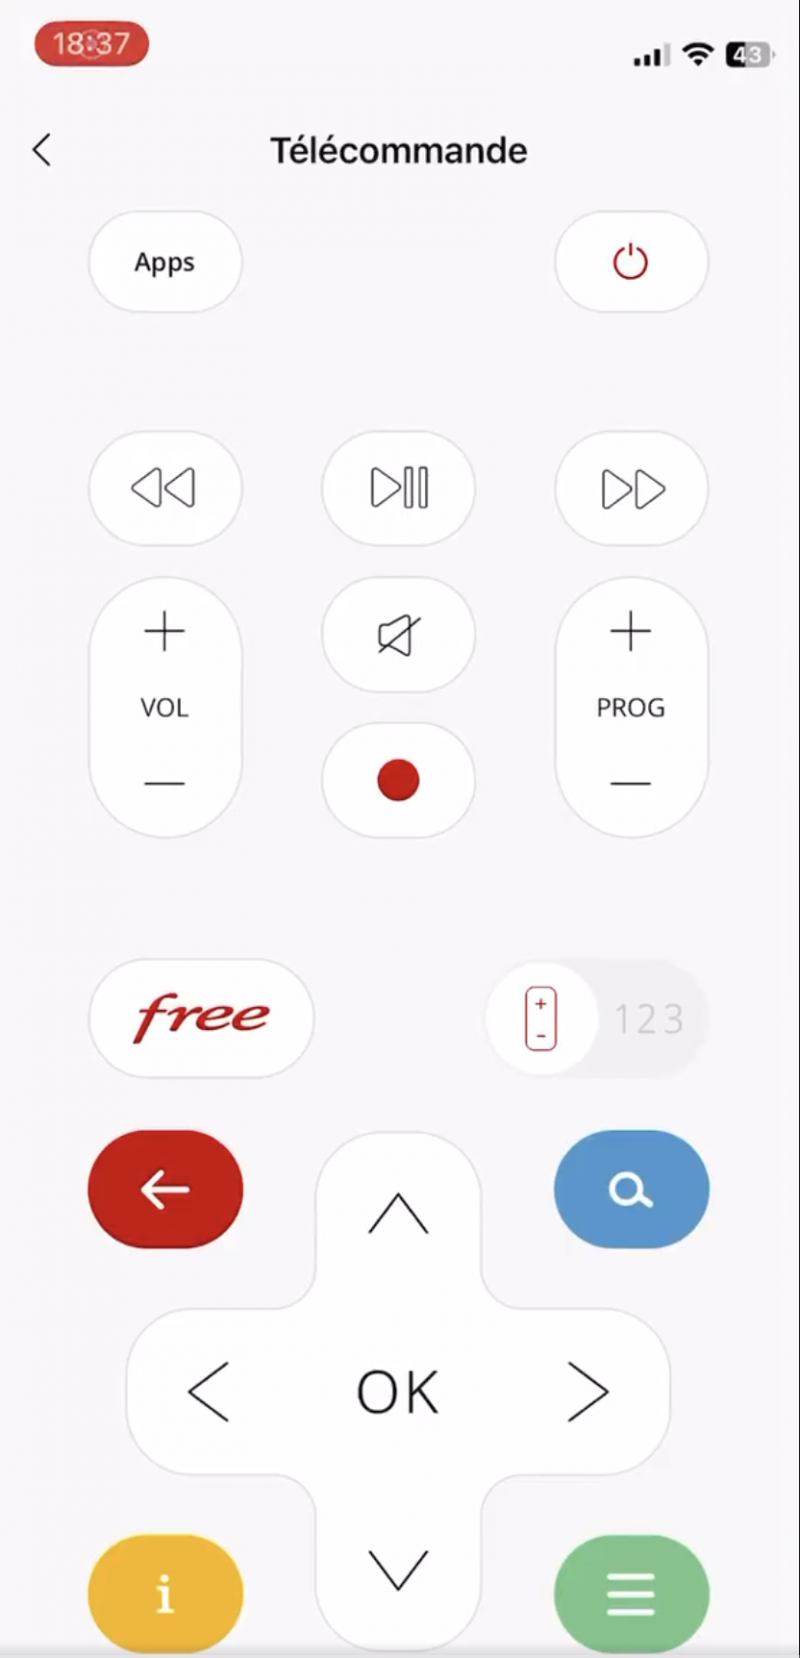 Free a sorti sa propre télécommande virtuelle sur iOS pour la